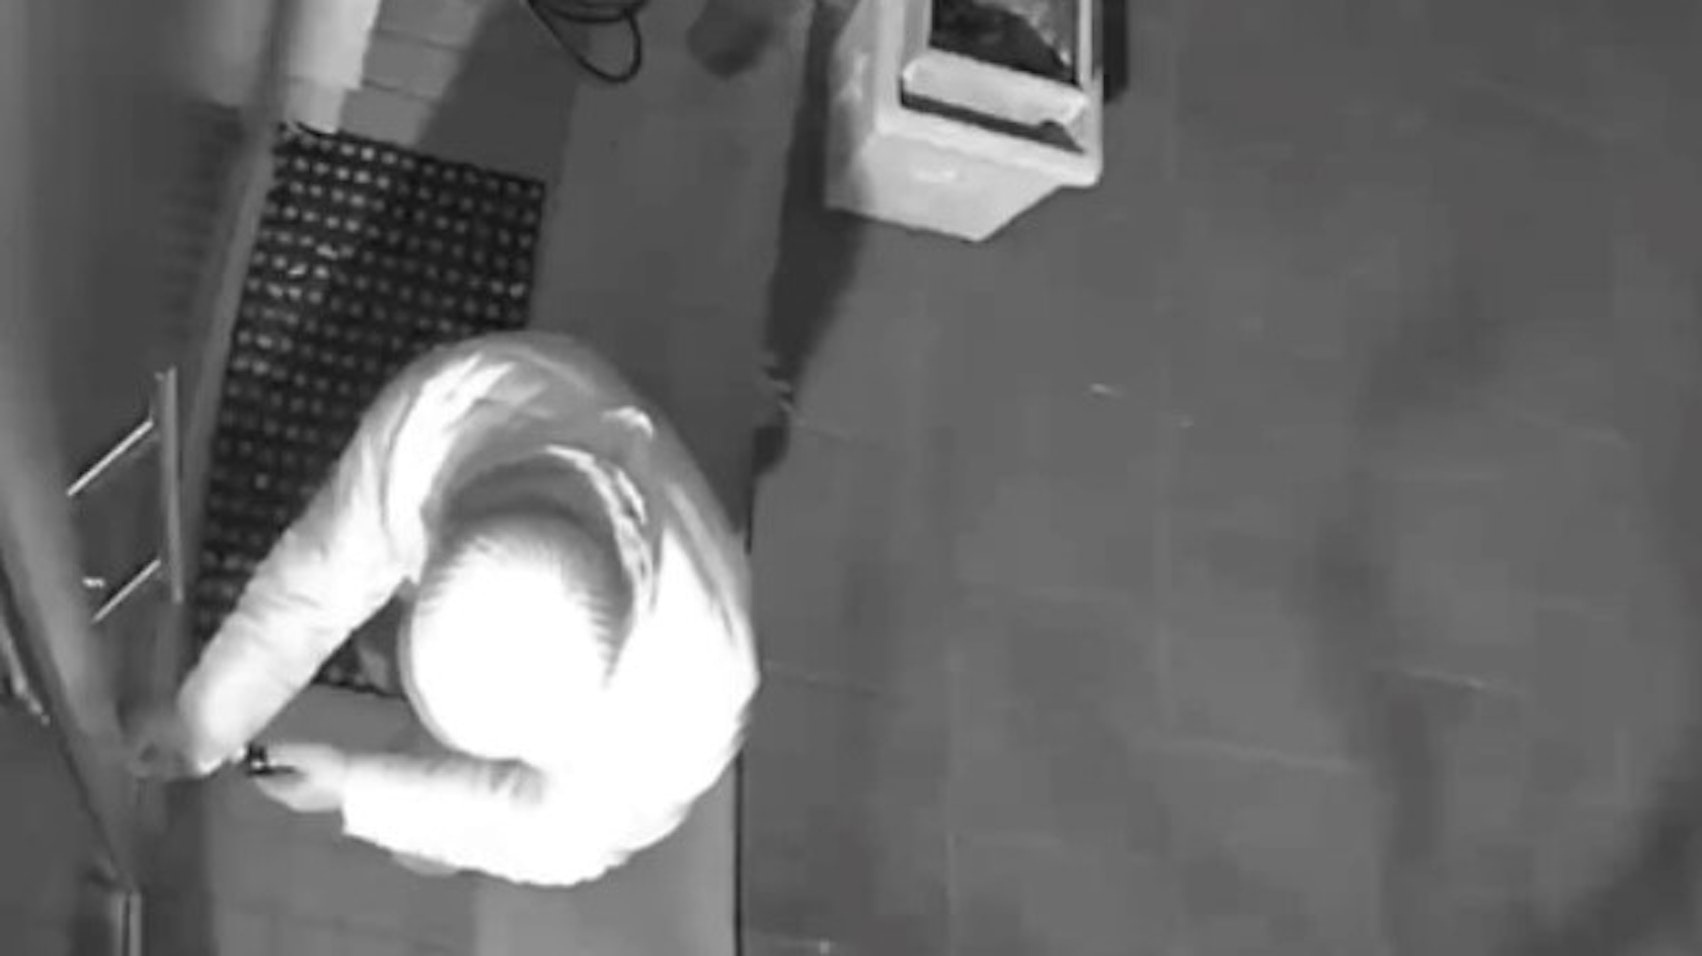 Ein hell gekleideter Einbrecher mit Mütze macht sich an einer Haustür zu schaffen.